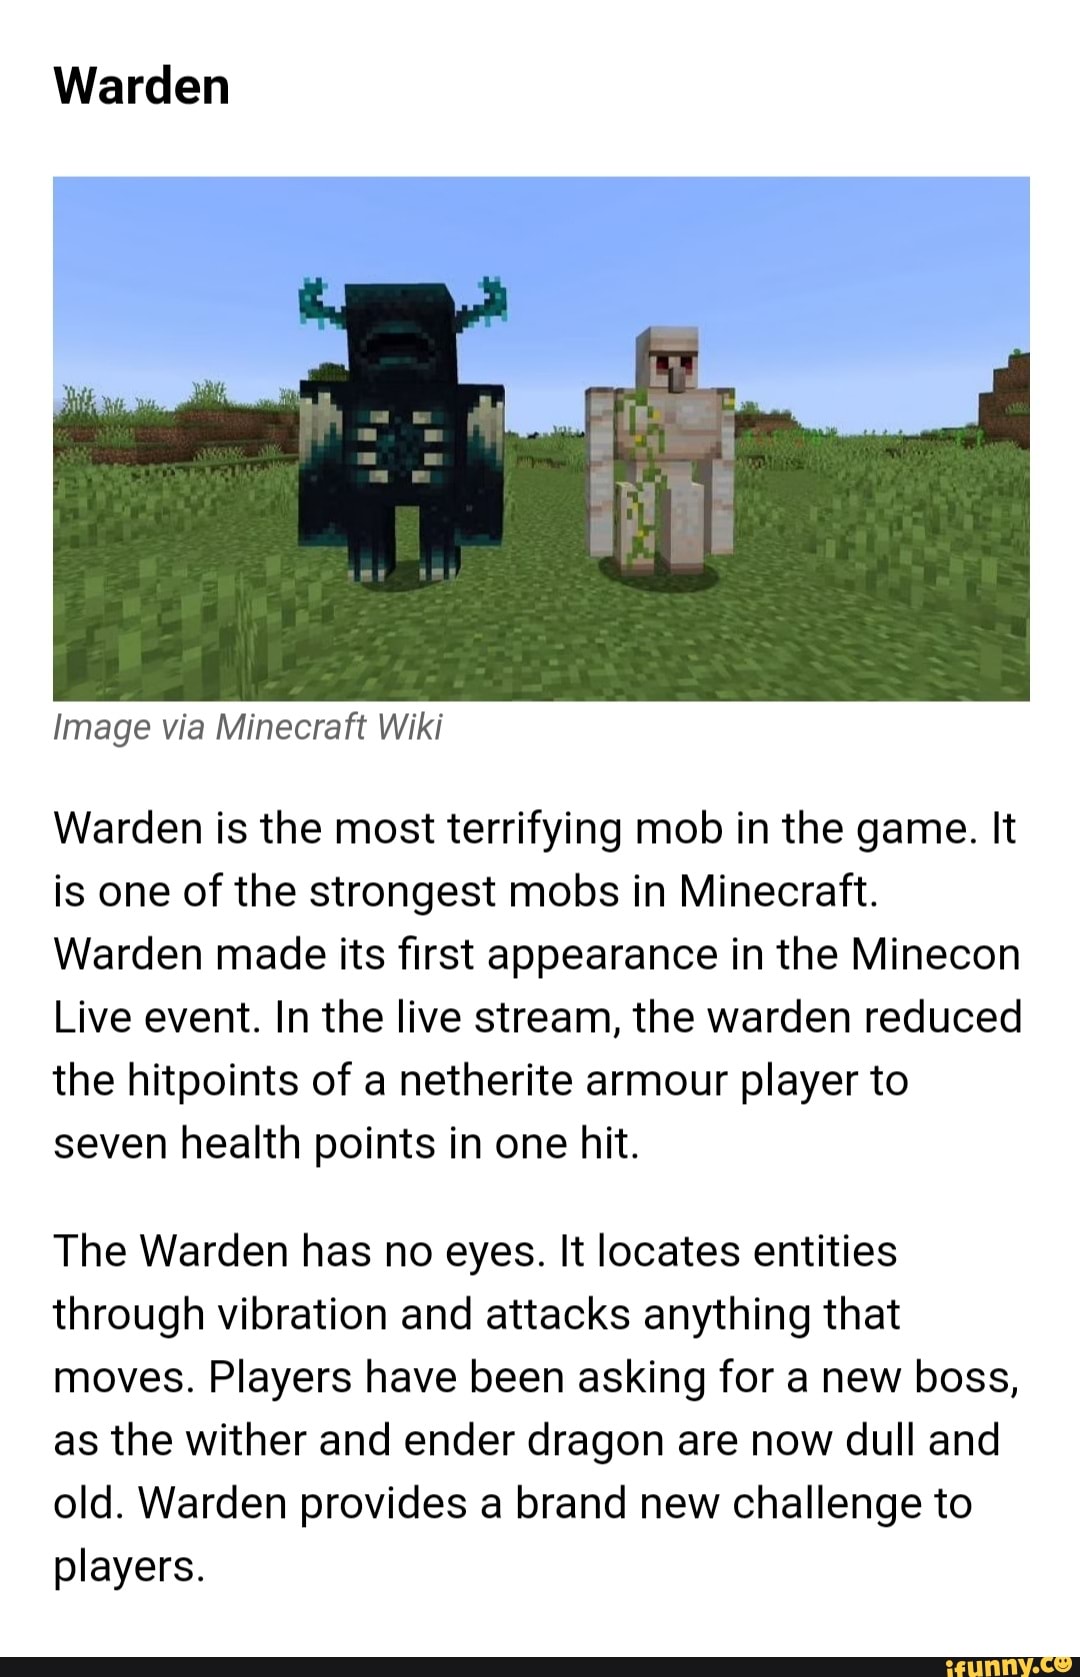 Ender Dragon, Minecraft Mobs Wiki